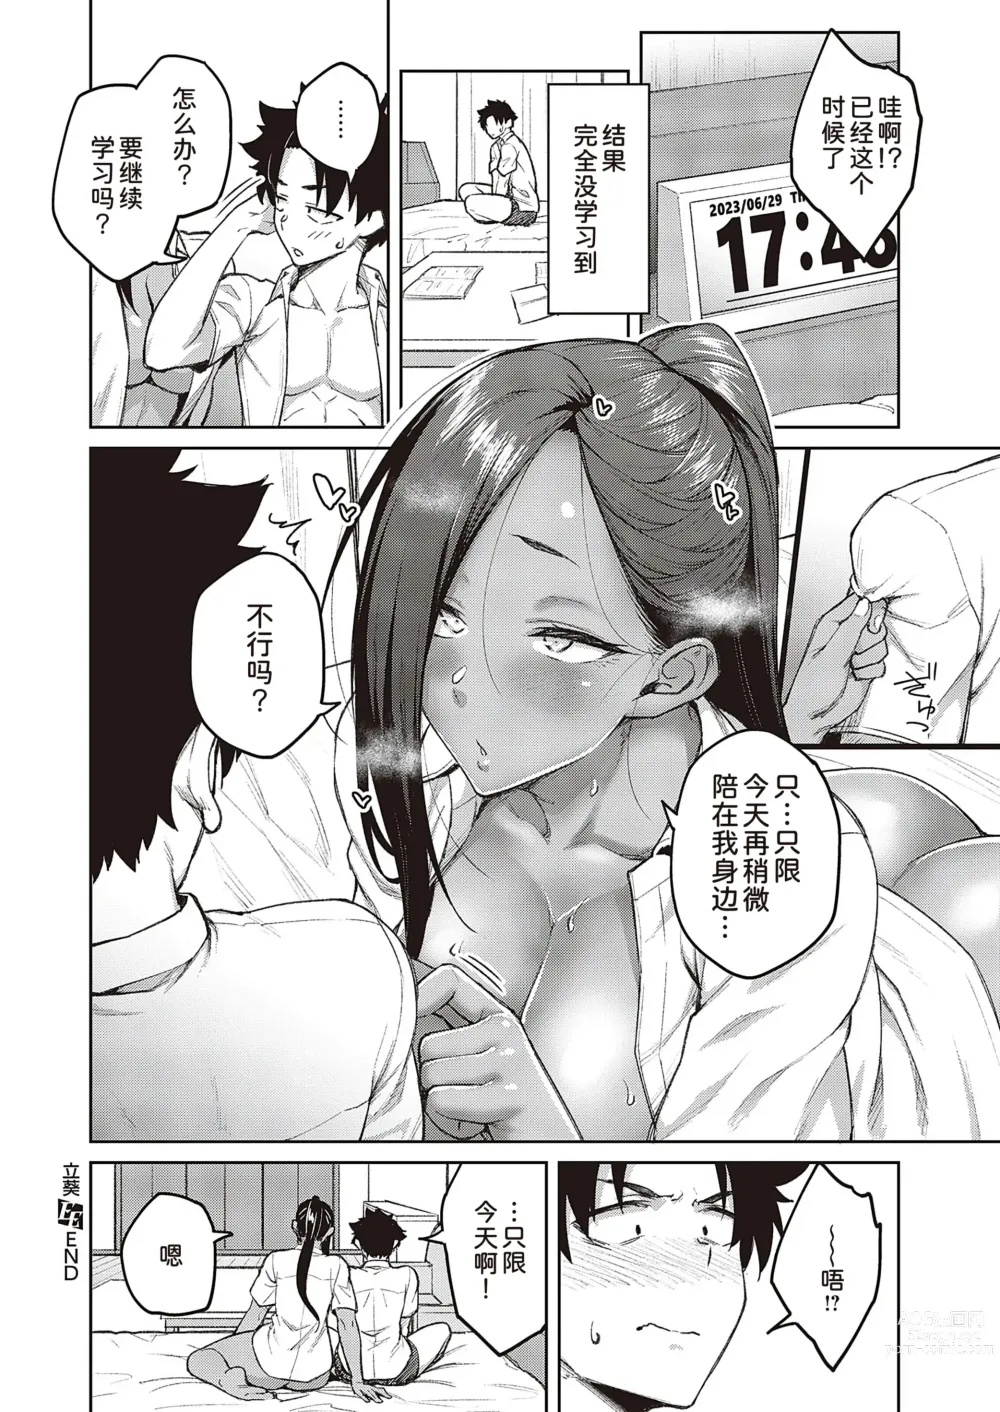 Page 35 of manga Tachiaoi 2